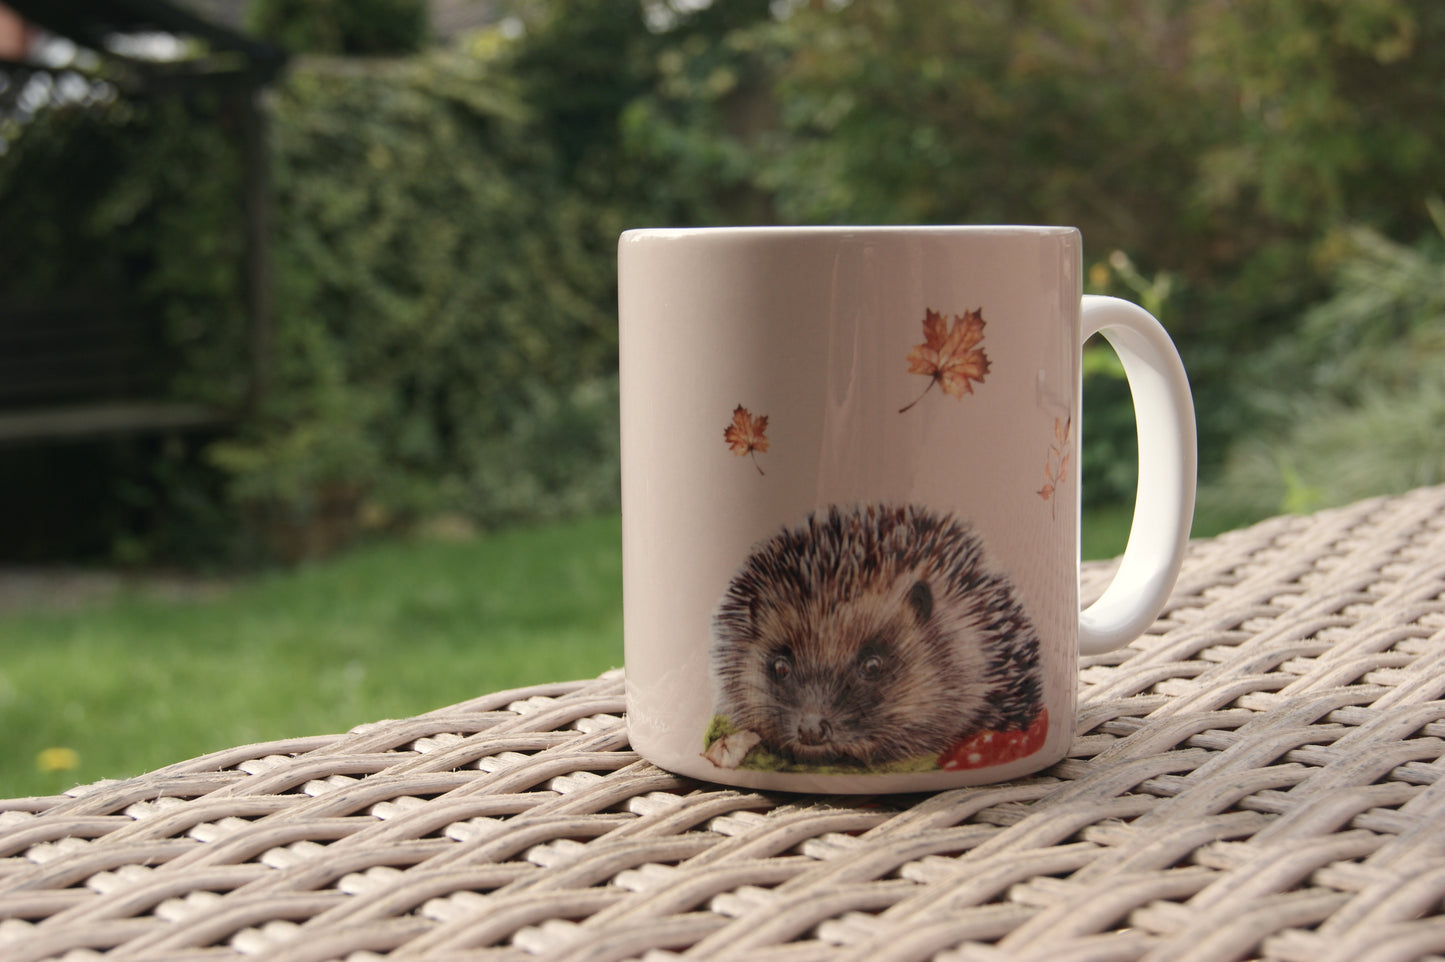 The Hedgehog Ceramic Mug